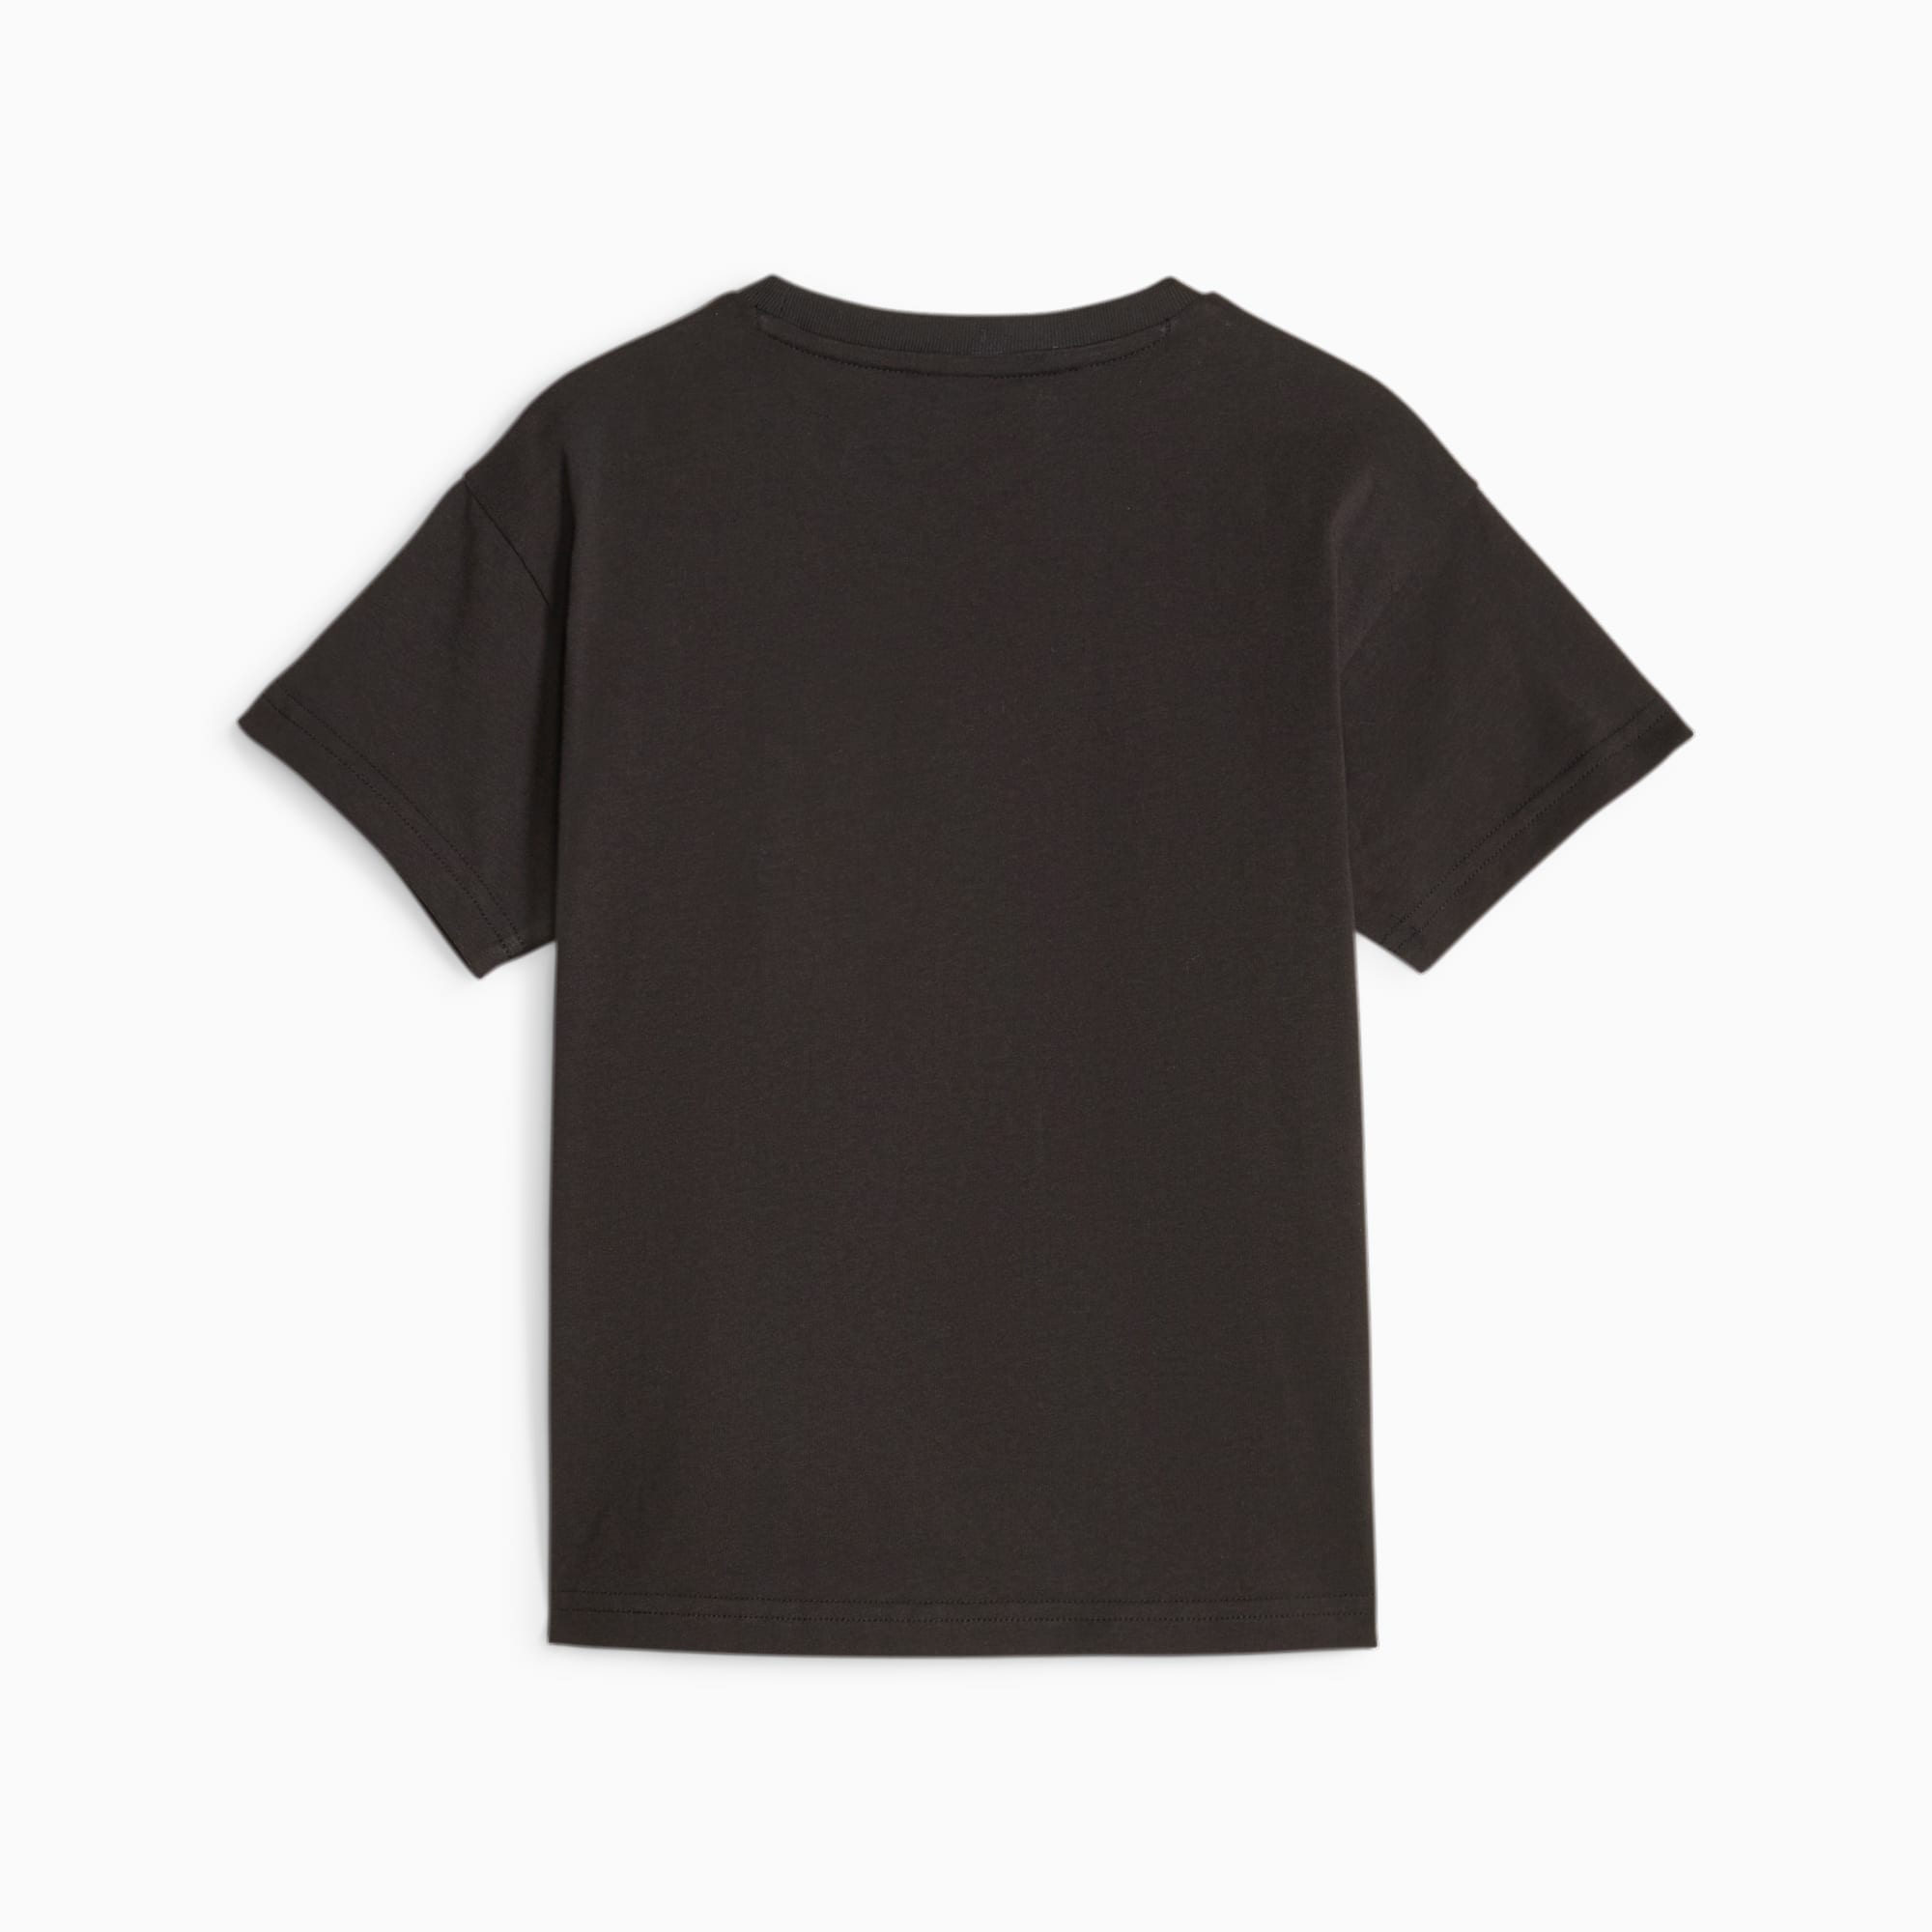 PUMA Classics Mix Match T-Shirt Kinder, Schwarz, Größe: 98, Kleidung